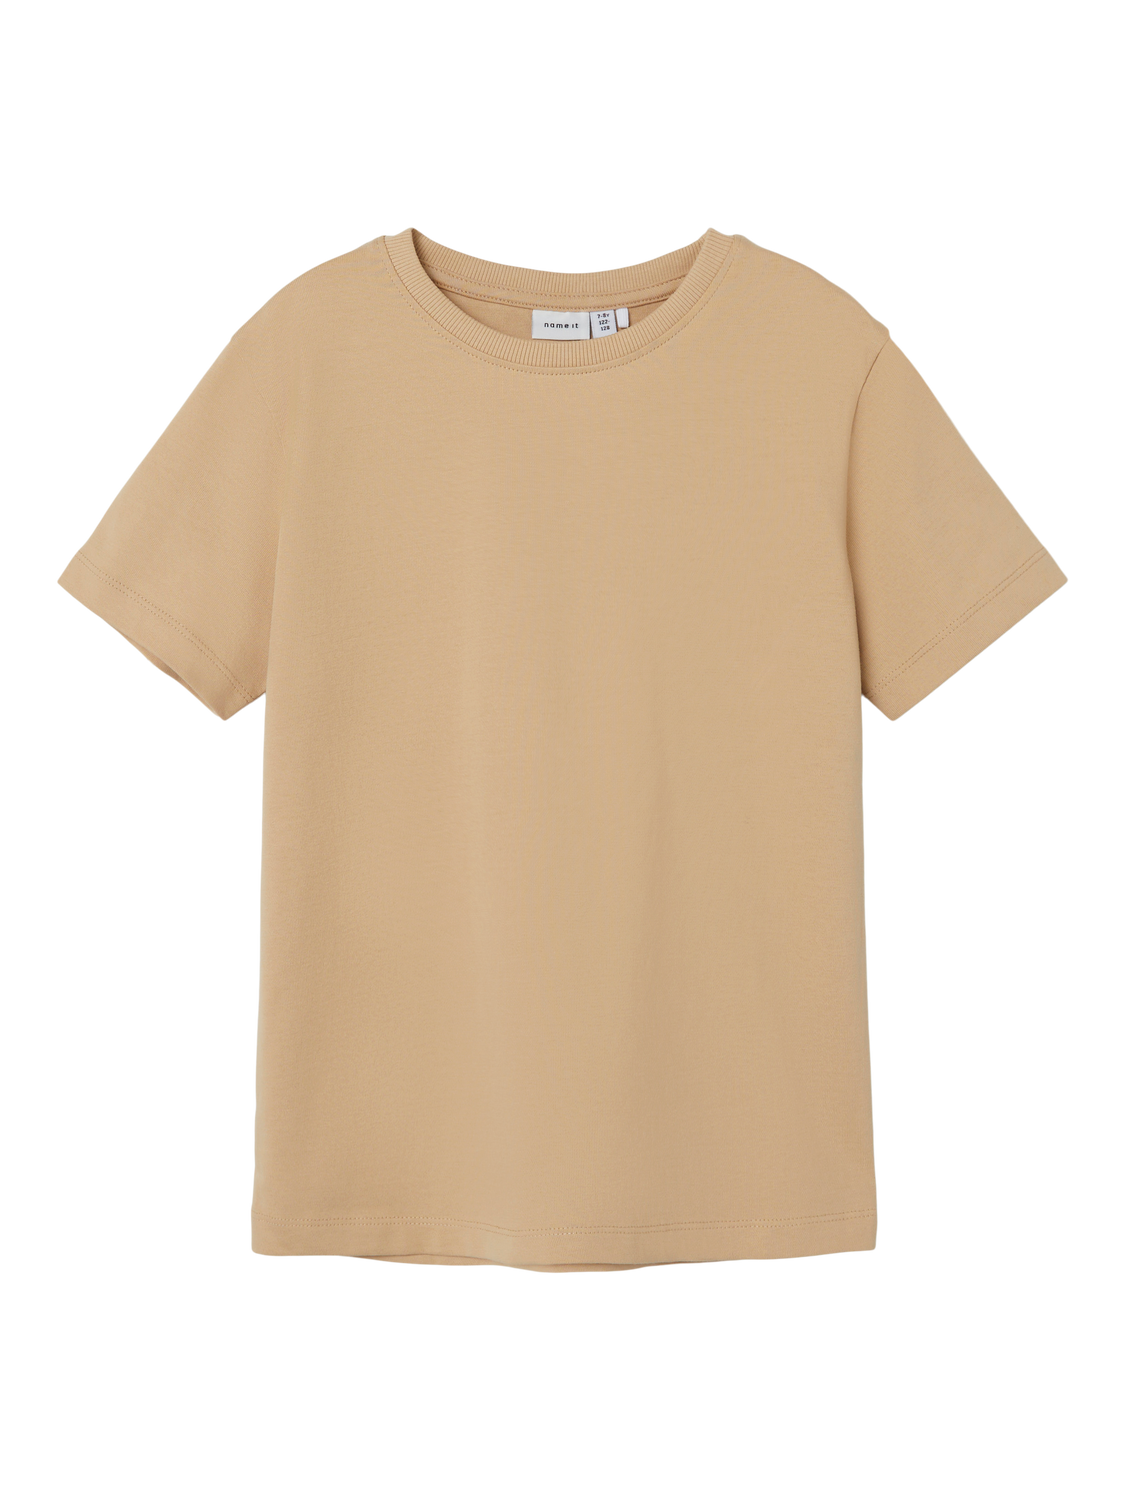 NKMTORSTEN T-Shirts & Tops - Warm Sand